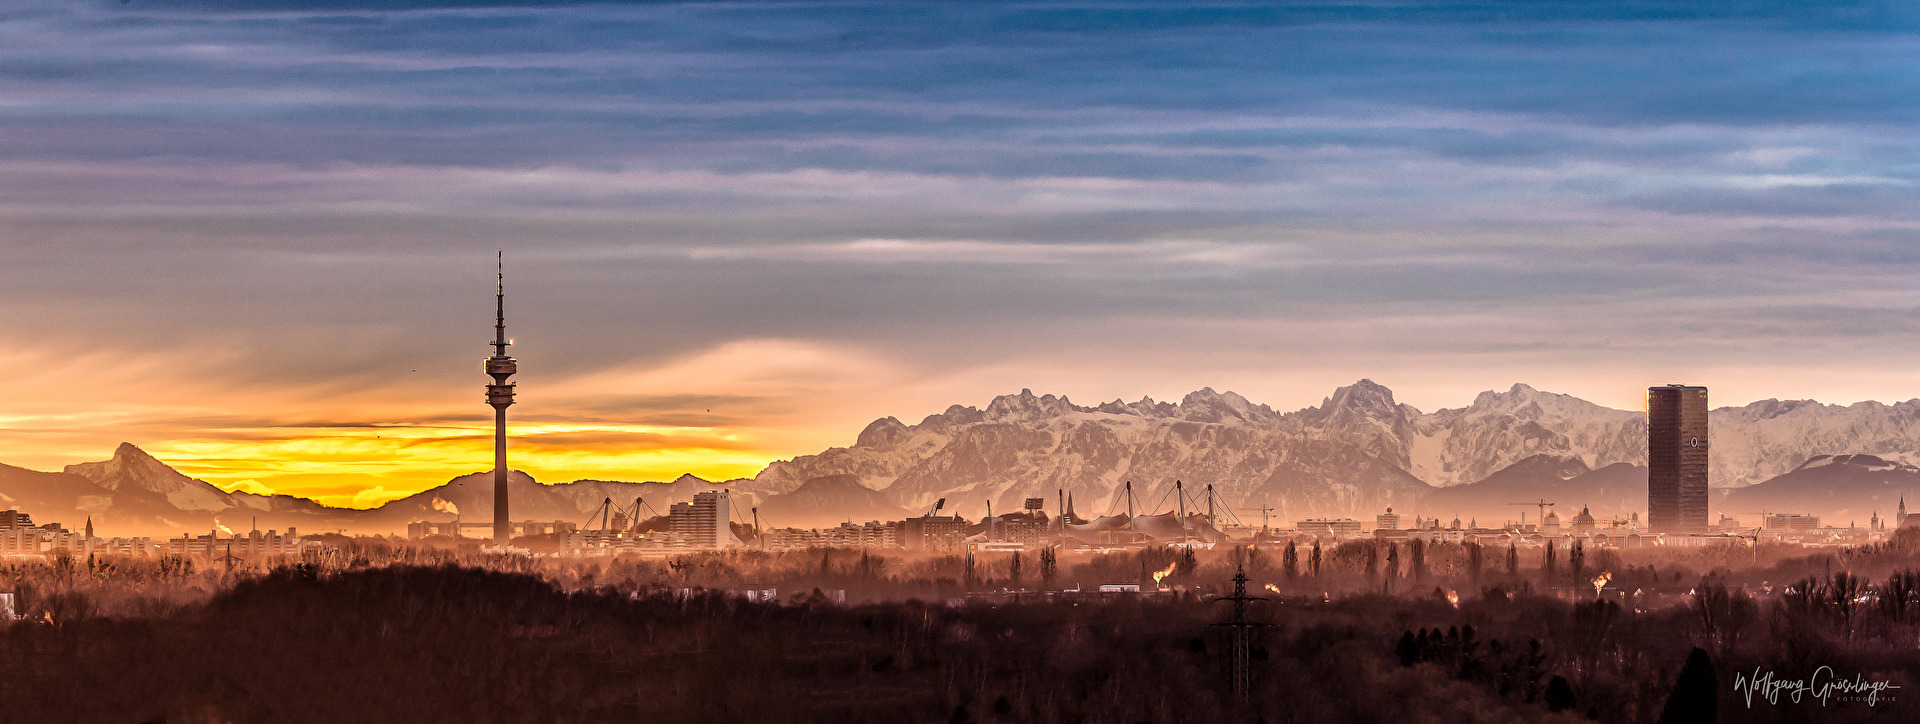 München Panorama vor Sonnenaufgang